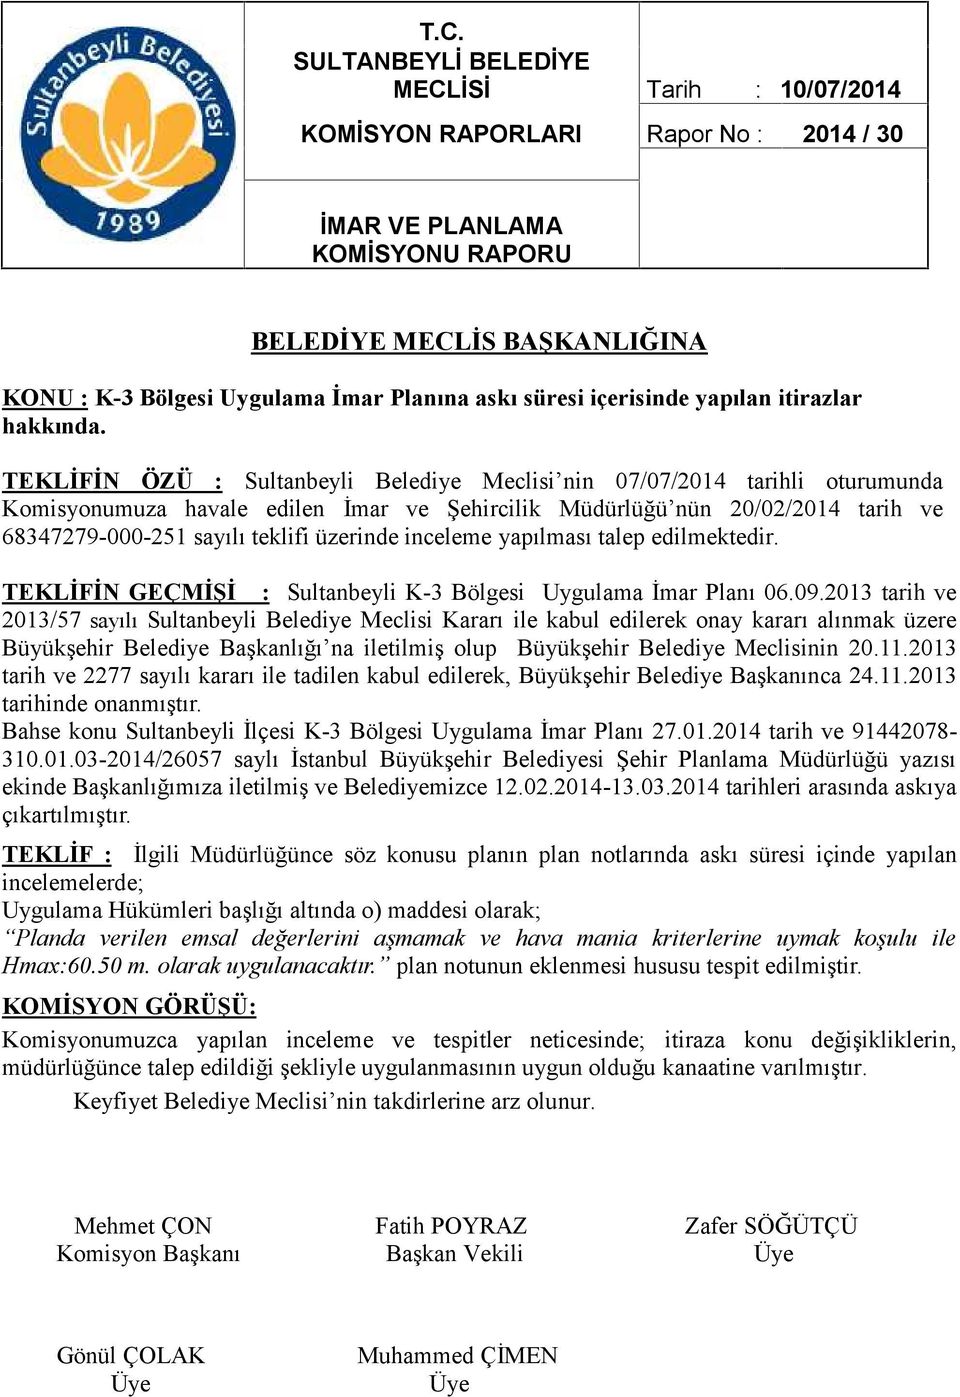 TEKLİFİN ÖZÜ : Sultanbeyli Belediye Meclisi nin 07/07/2014 tarihli oturumunda Komisyonumuza havale edilen İmar ve Şehircilik Müdürlüğü nün 20/02/2014 tarih ve 68347279-000-251 sayılı teklifi üzerinde